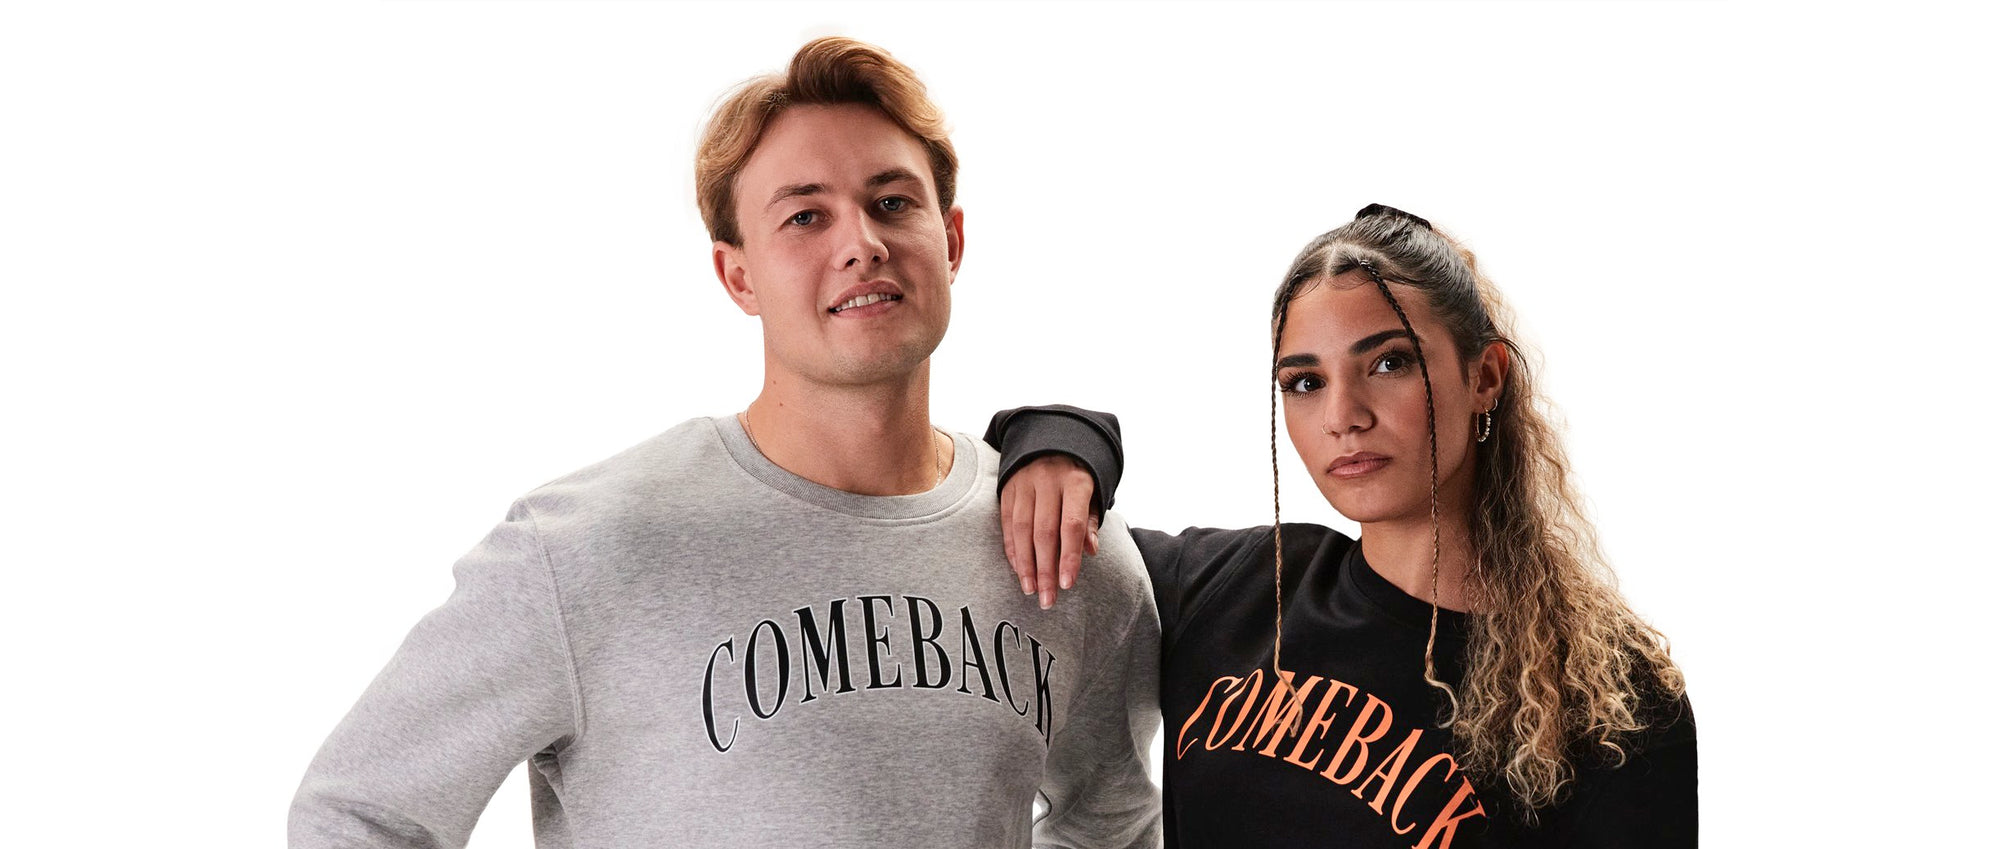 Tilføj stil og komfort til dit outfit med autentiske sweatshirts fra Comeback Streetwear - perfekt til enhver begivenhed.